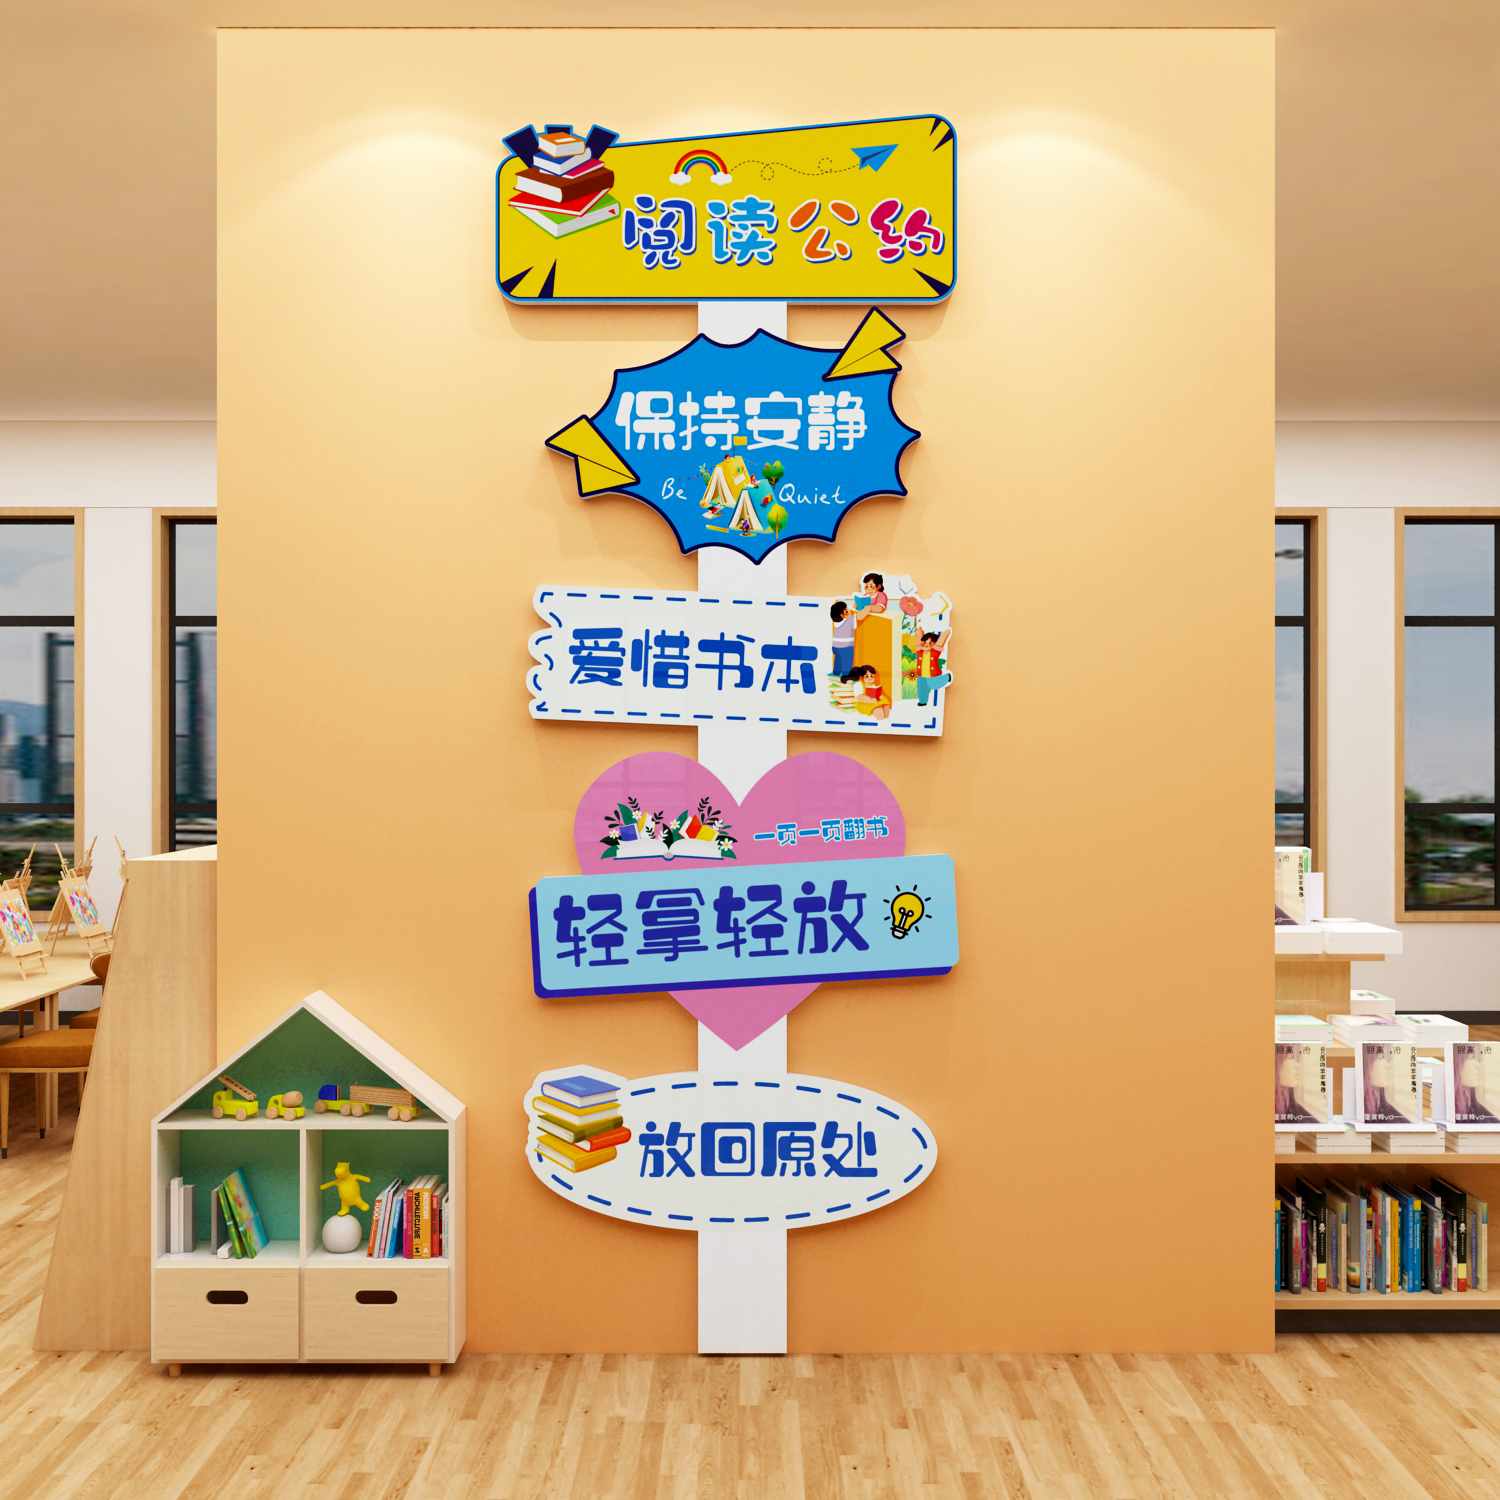 阅读公约绘本馆环创墙面读区图书角布置装饰阅览室文化墙贴幼儿园